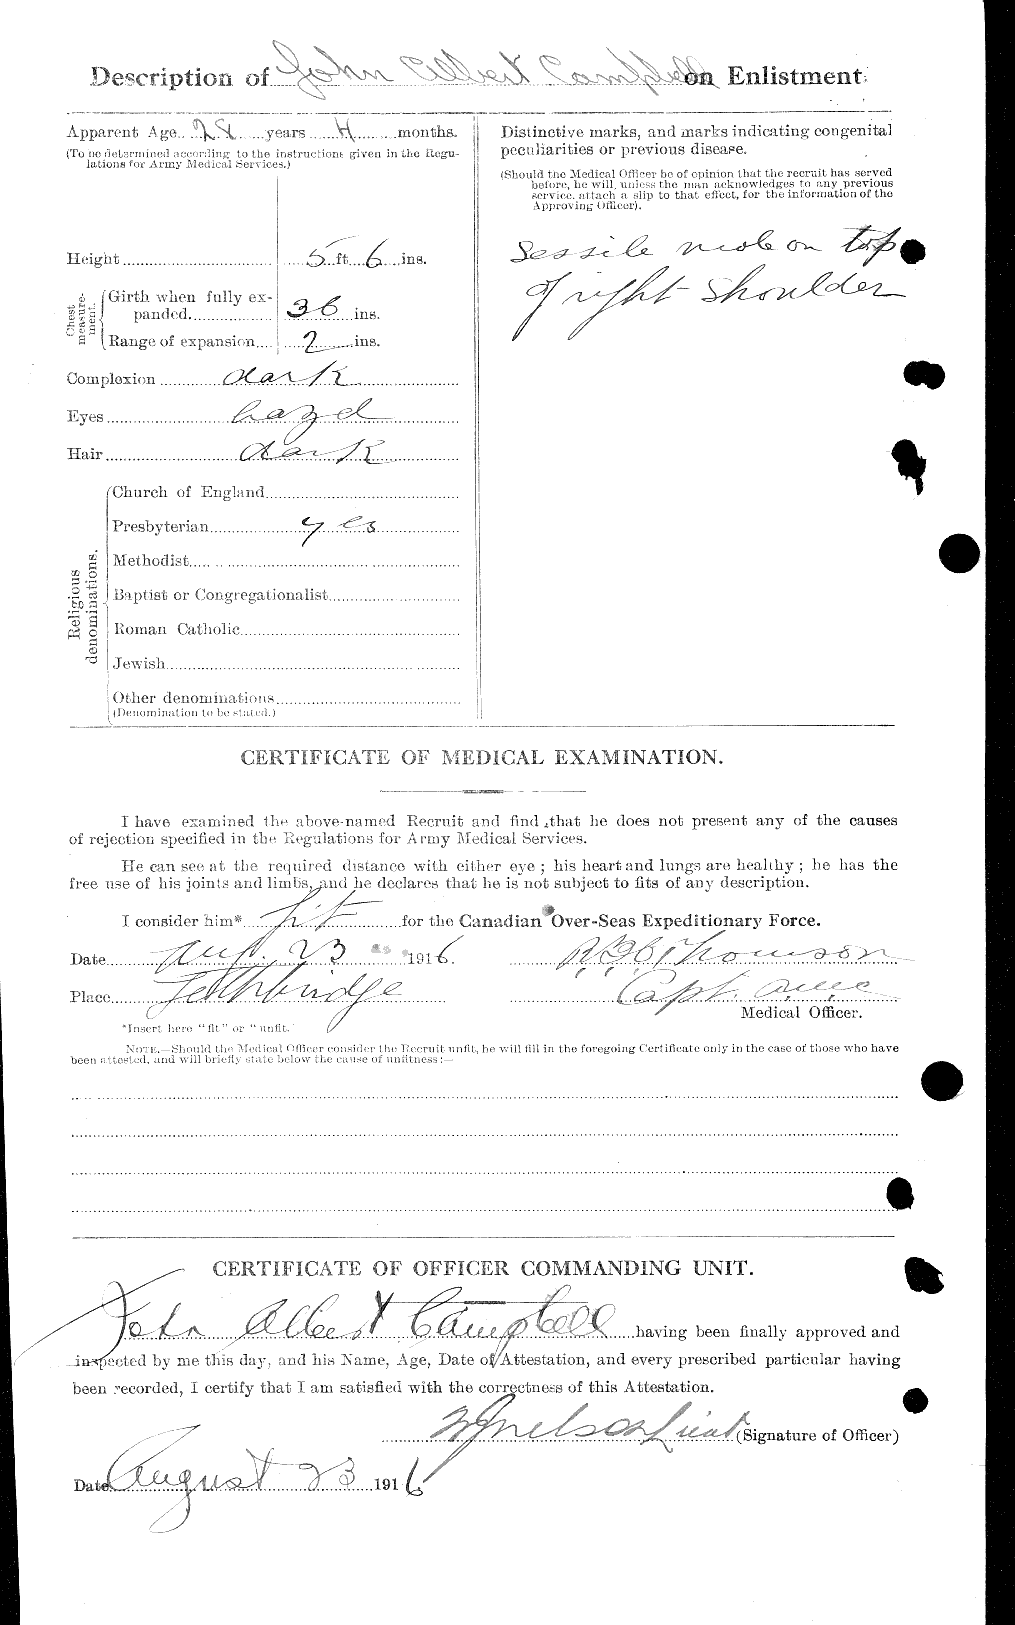 Dossiers du Personnel de la Première Guerre mondiale - CEC 006850b